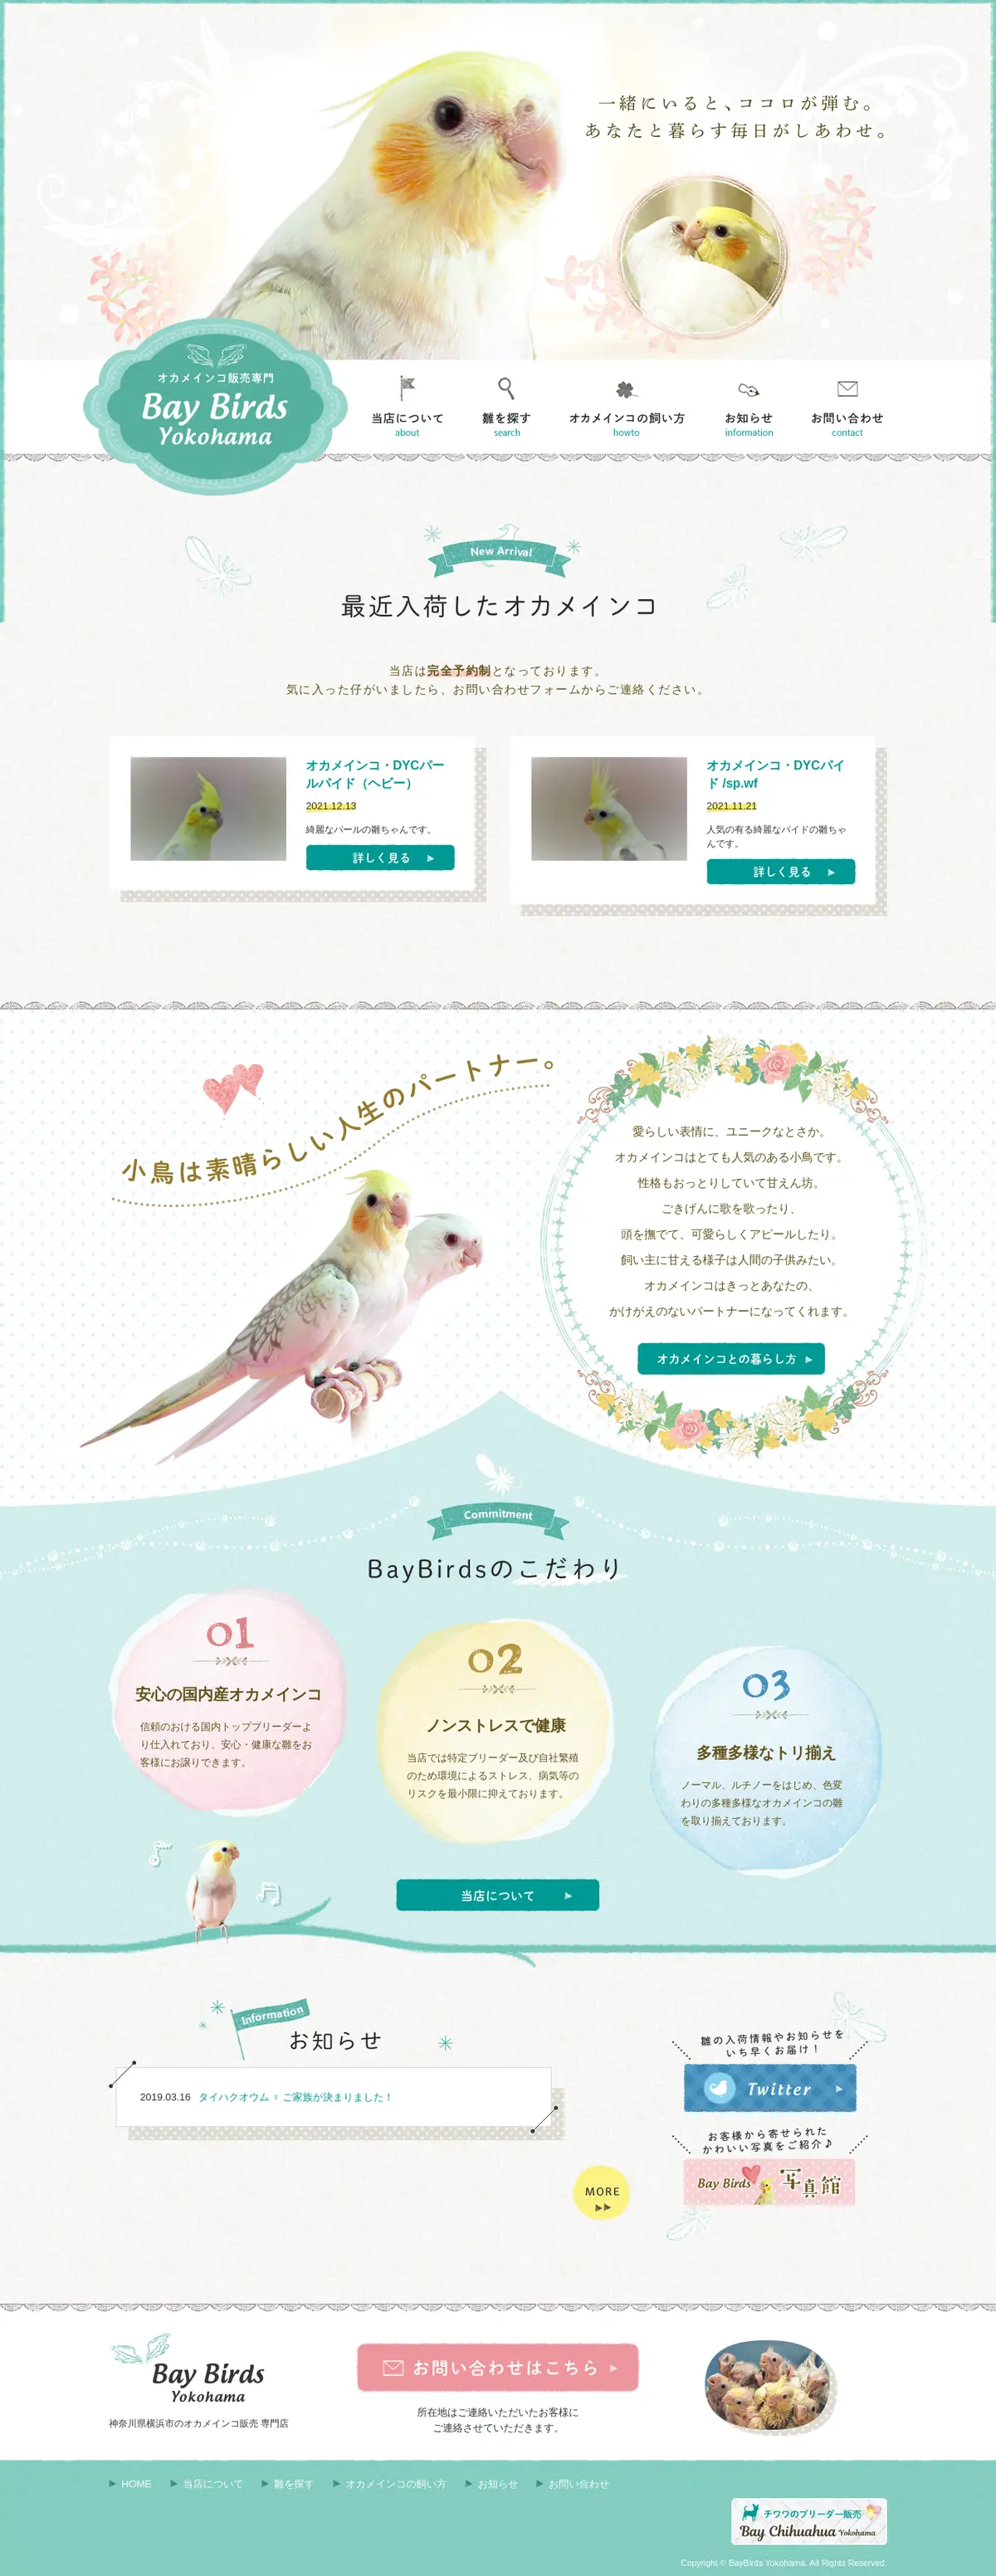 キャプチャ画面 会社名:ベイバードヨコハマプロジェクト名:Bay Birds Yokohama 画面名:全国トップ デバイス名:PCカテゴリ:動物・ペットタグ:PC,全国トップ